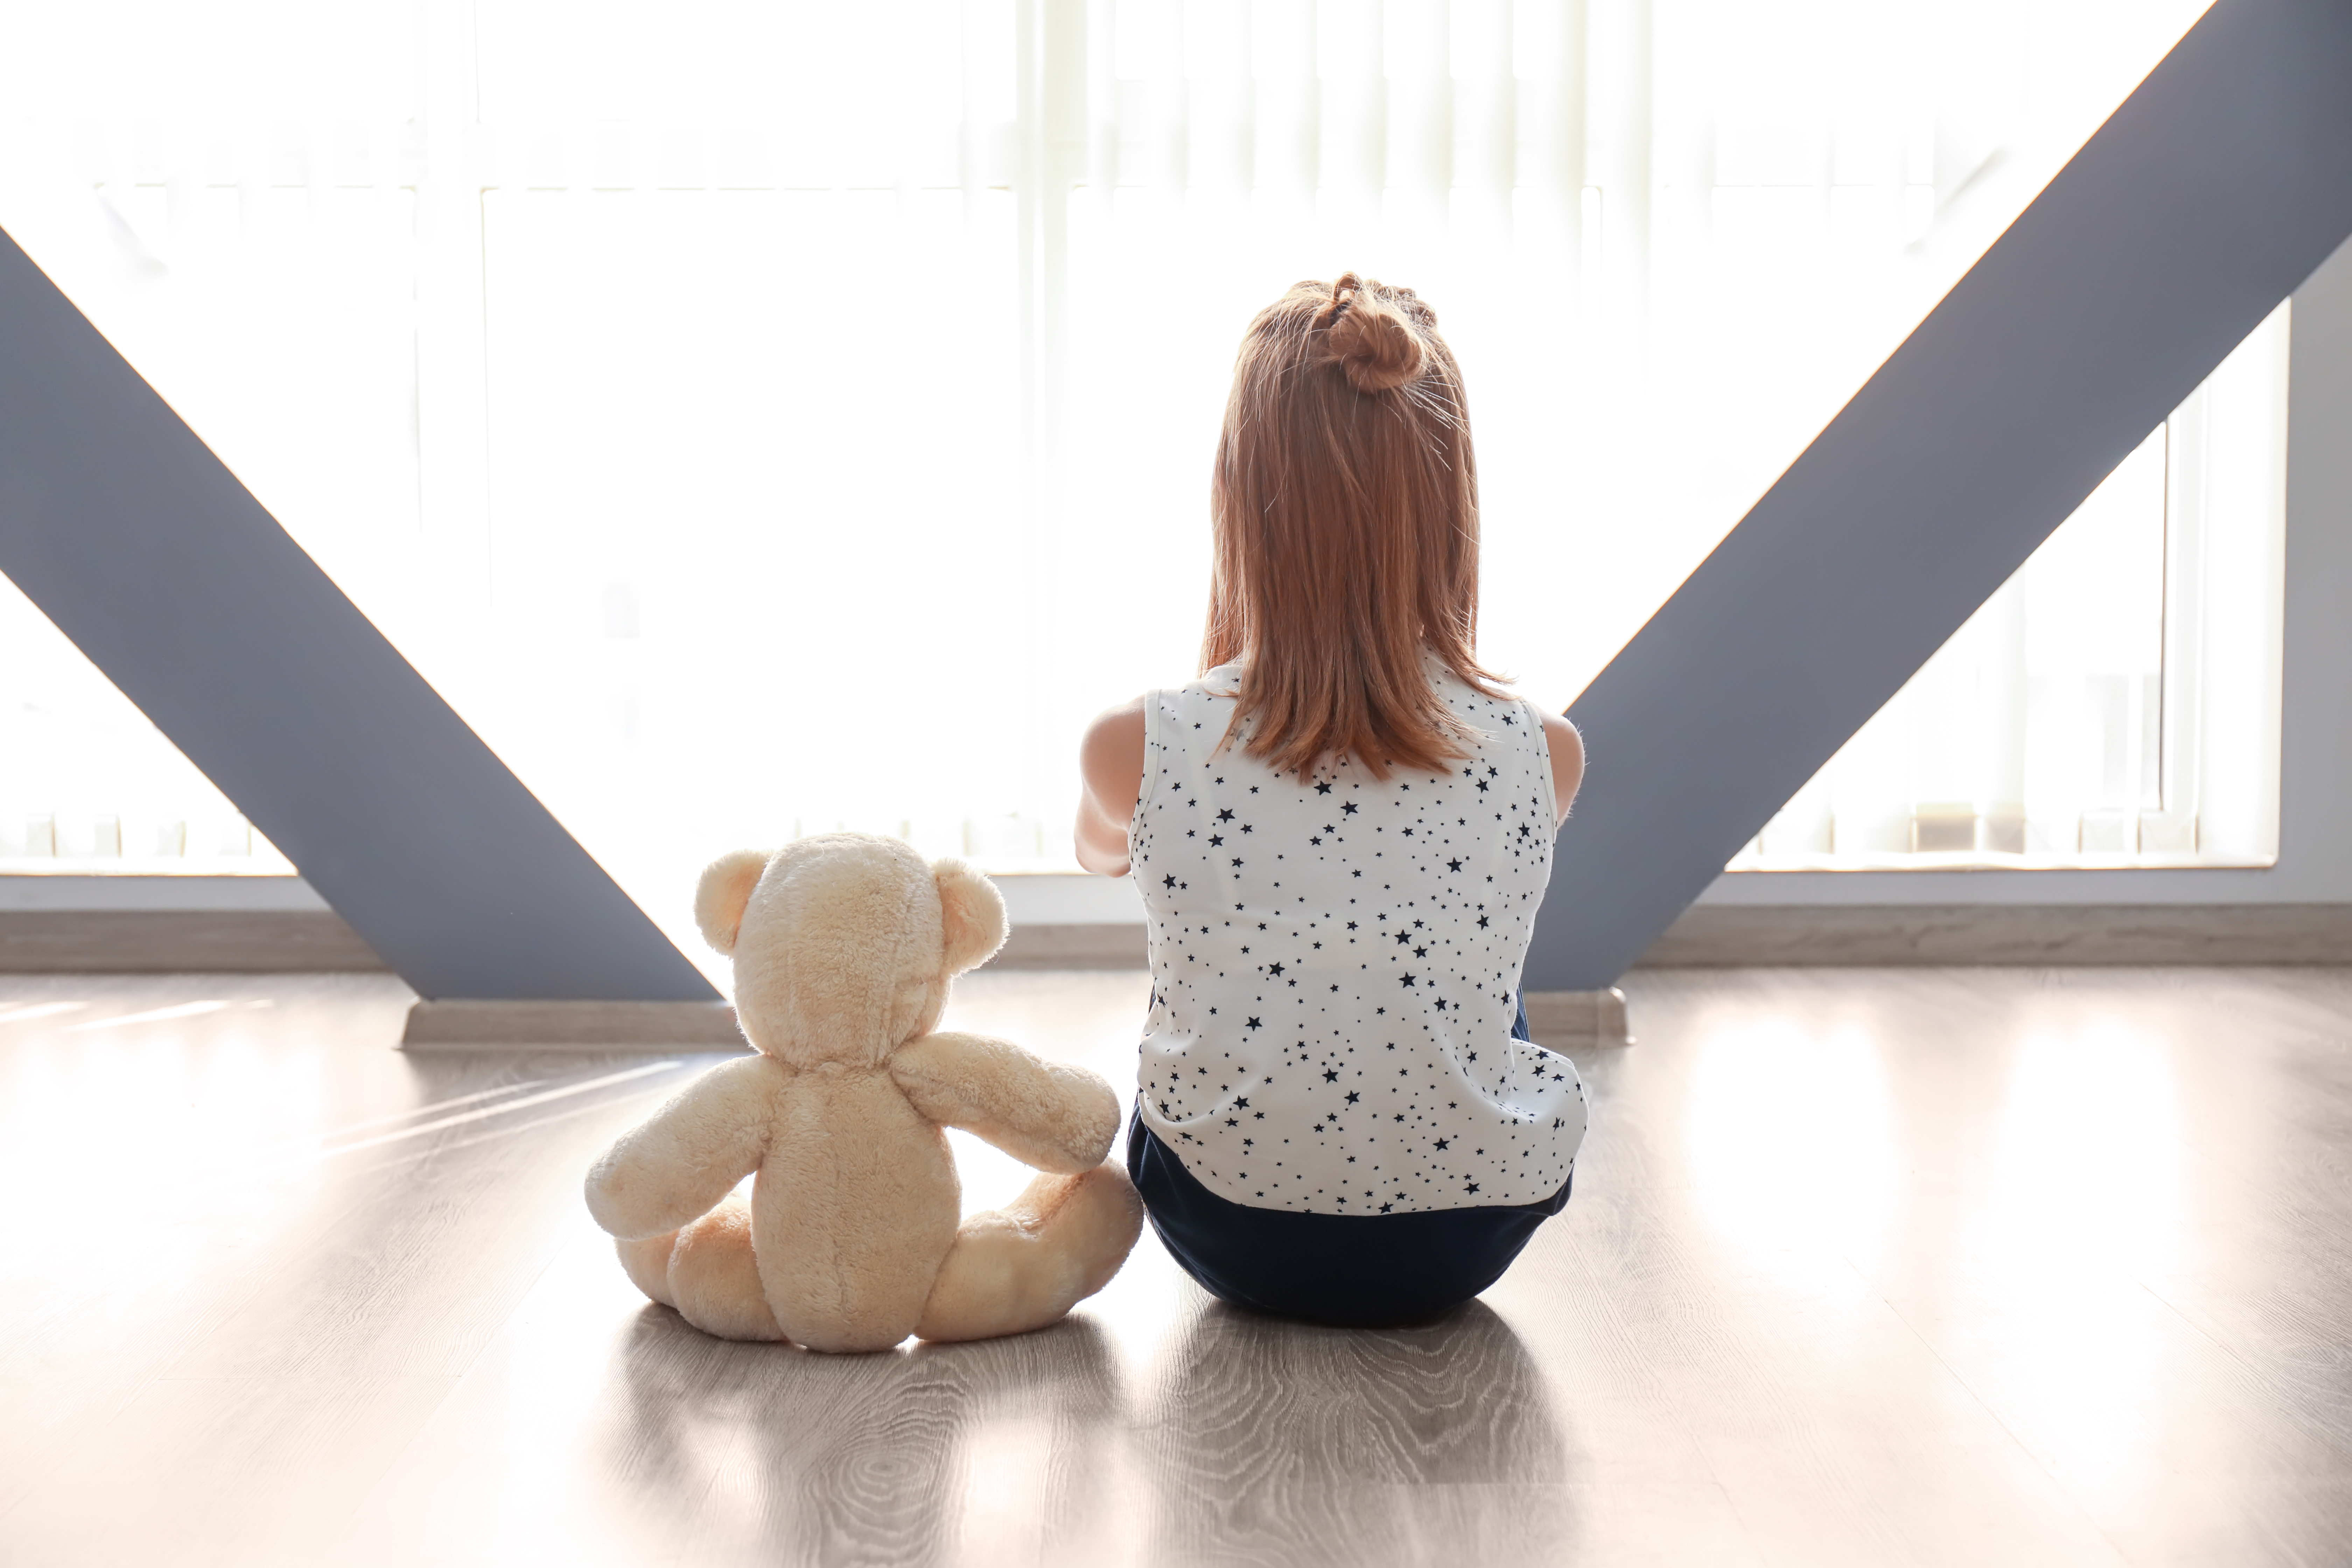 Ein kleines Mädchen sitzt mit ihrem Teddybär auf dem Boden | Quelle: Shutterstock